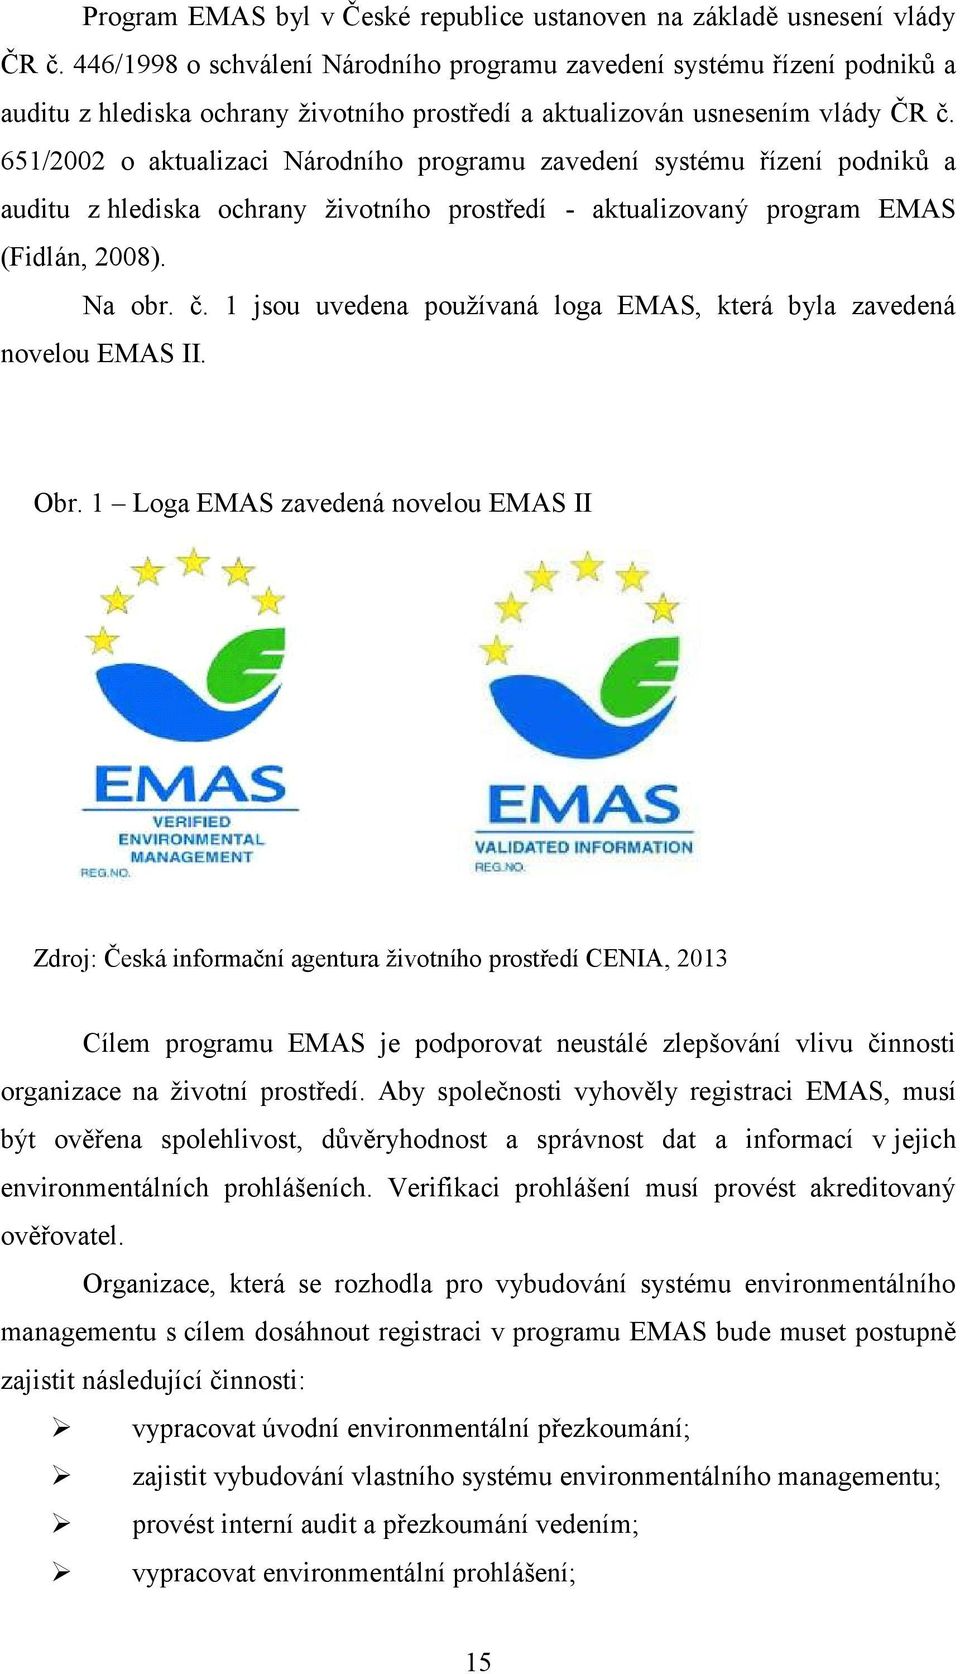 651/2002 o aktualizaci Národního programu zavedení systému řízení podniků a auditu z hlediska ochrany životního prostředí - aktualizovaný program EMAS (Fidlán, 2008). Na obr. č.